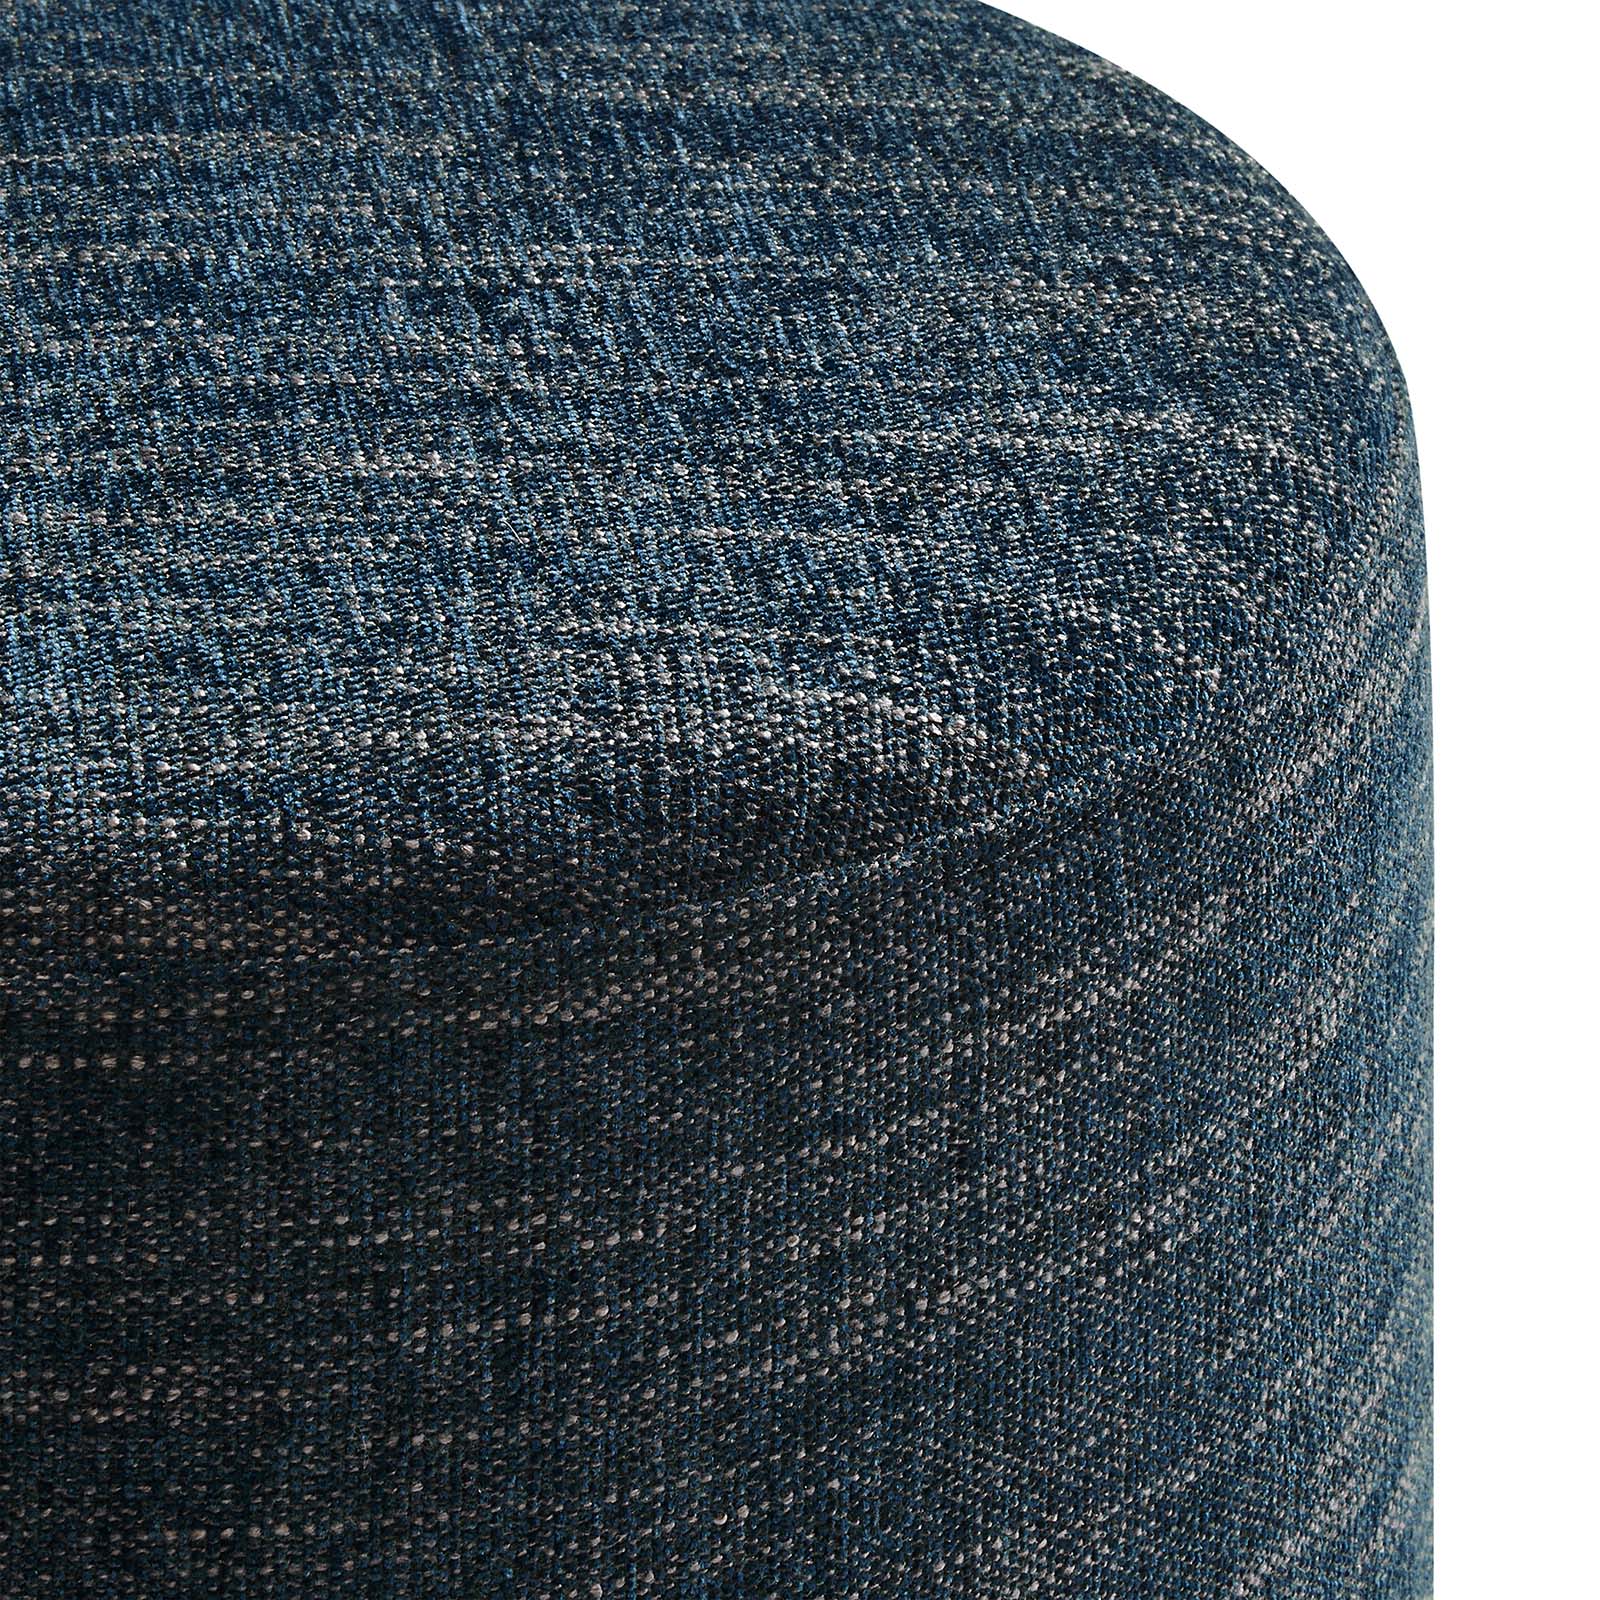 Callum 16" Round Woven Heathered Fabric Upholstered Ottoman-Ottoman-Modway-Wall2Wall Furnishings